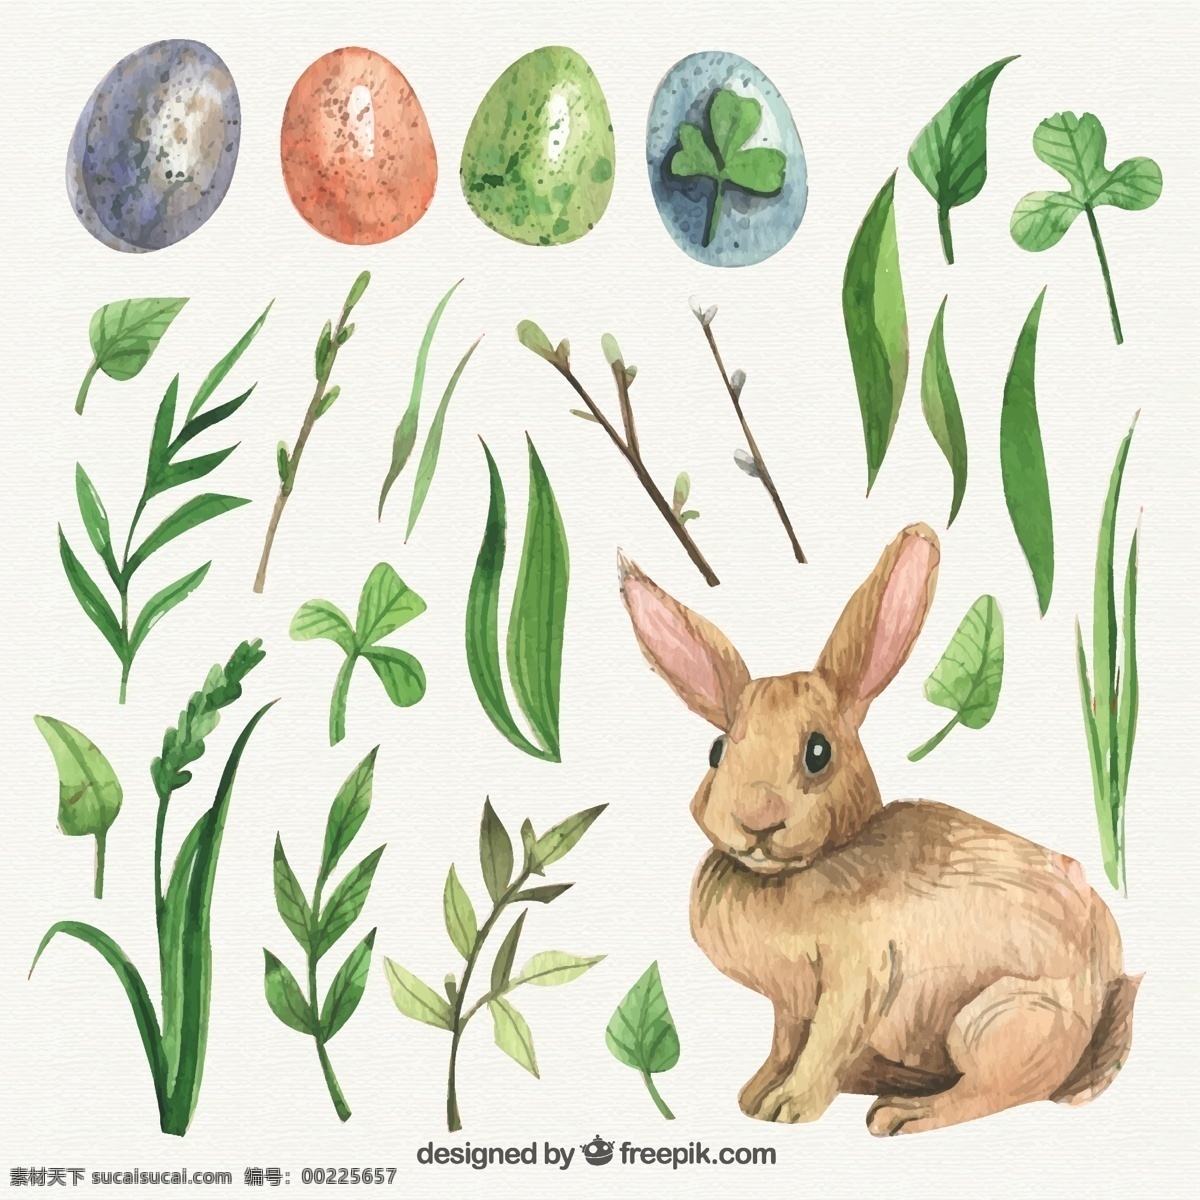 复活节 手绘 叶子 可爱 兔子 水彩 手 自然 动物 春天 树叶 庆祝 假日 宗教 蛋 兔 传统 基督教 三叶草 日